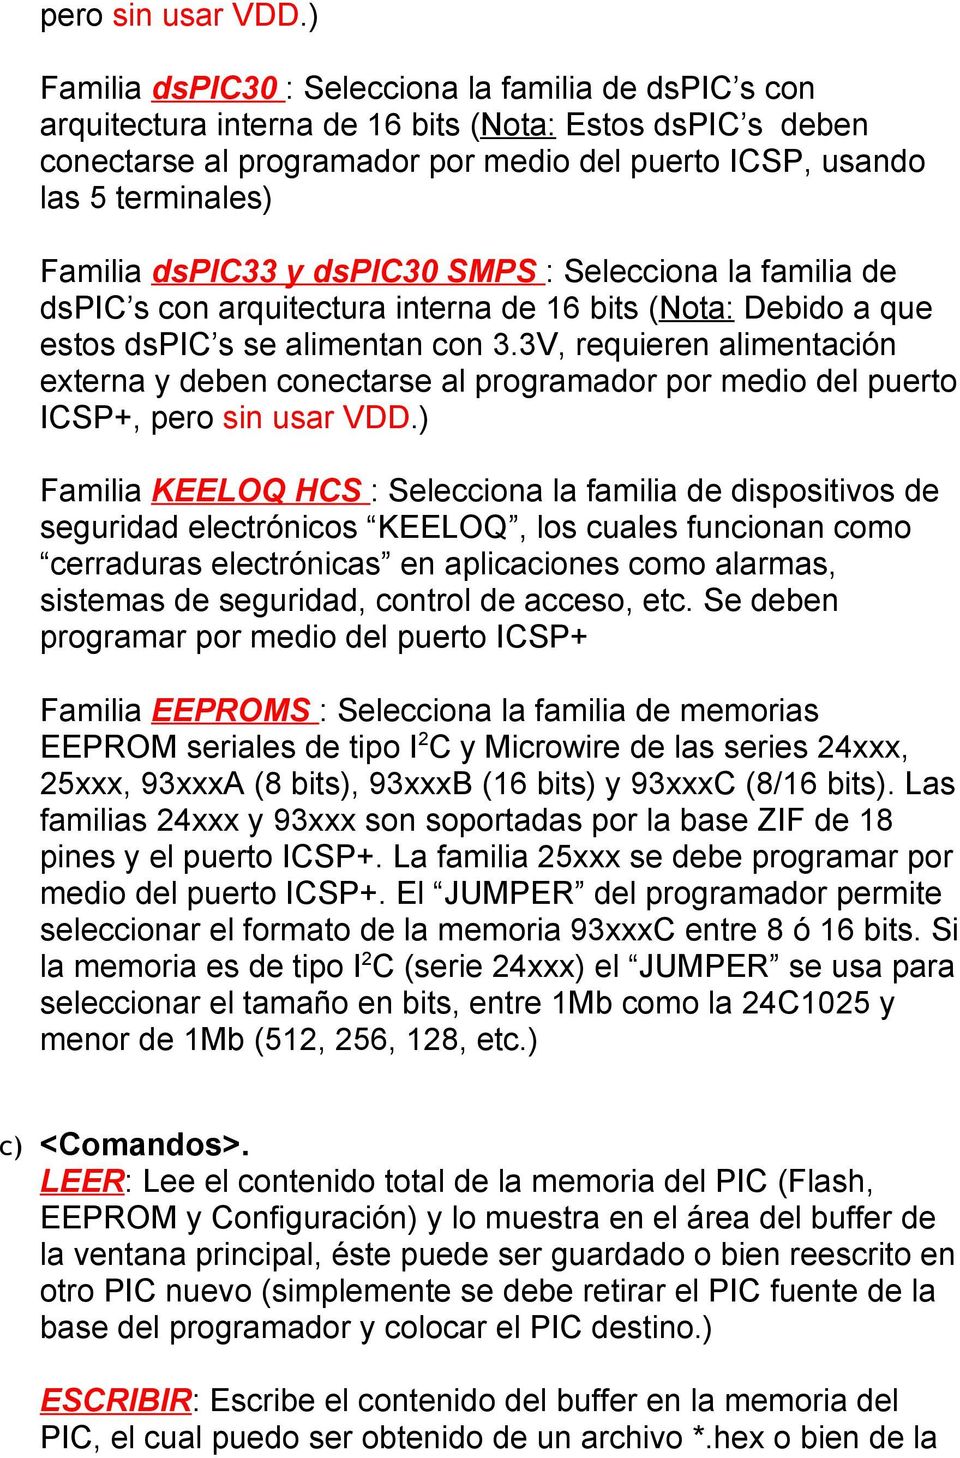 Familia dspic33 y dspic30 SMPS : Selecciona la familia de dspic s con arquitectura interna de 16 bits (Nota: Debido a que estos dspic s se alimentan con 3.